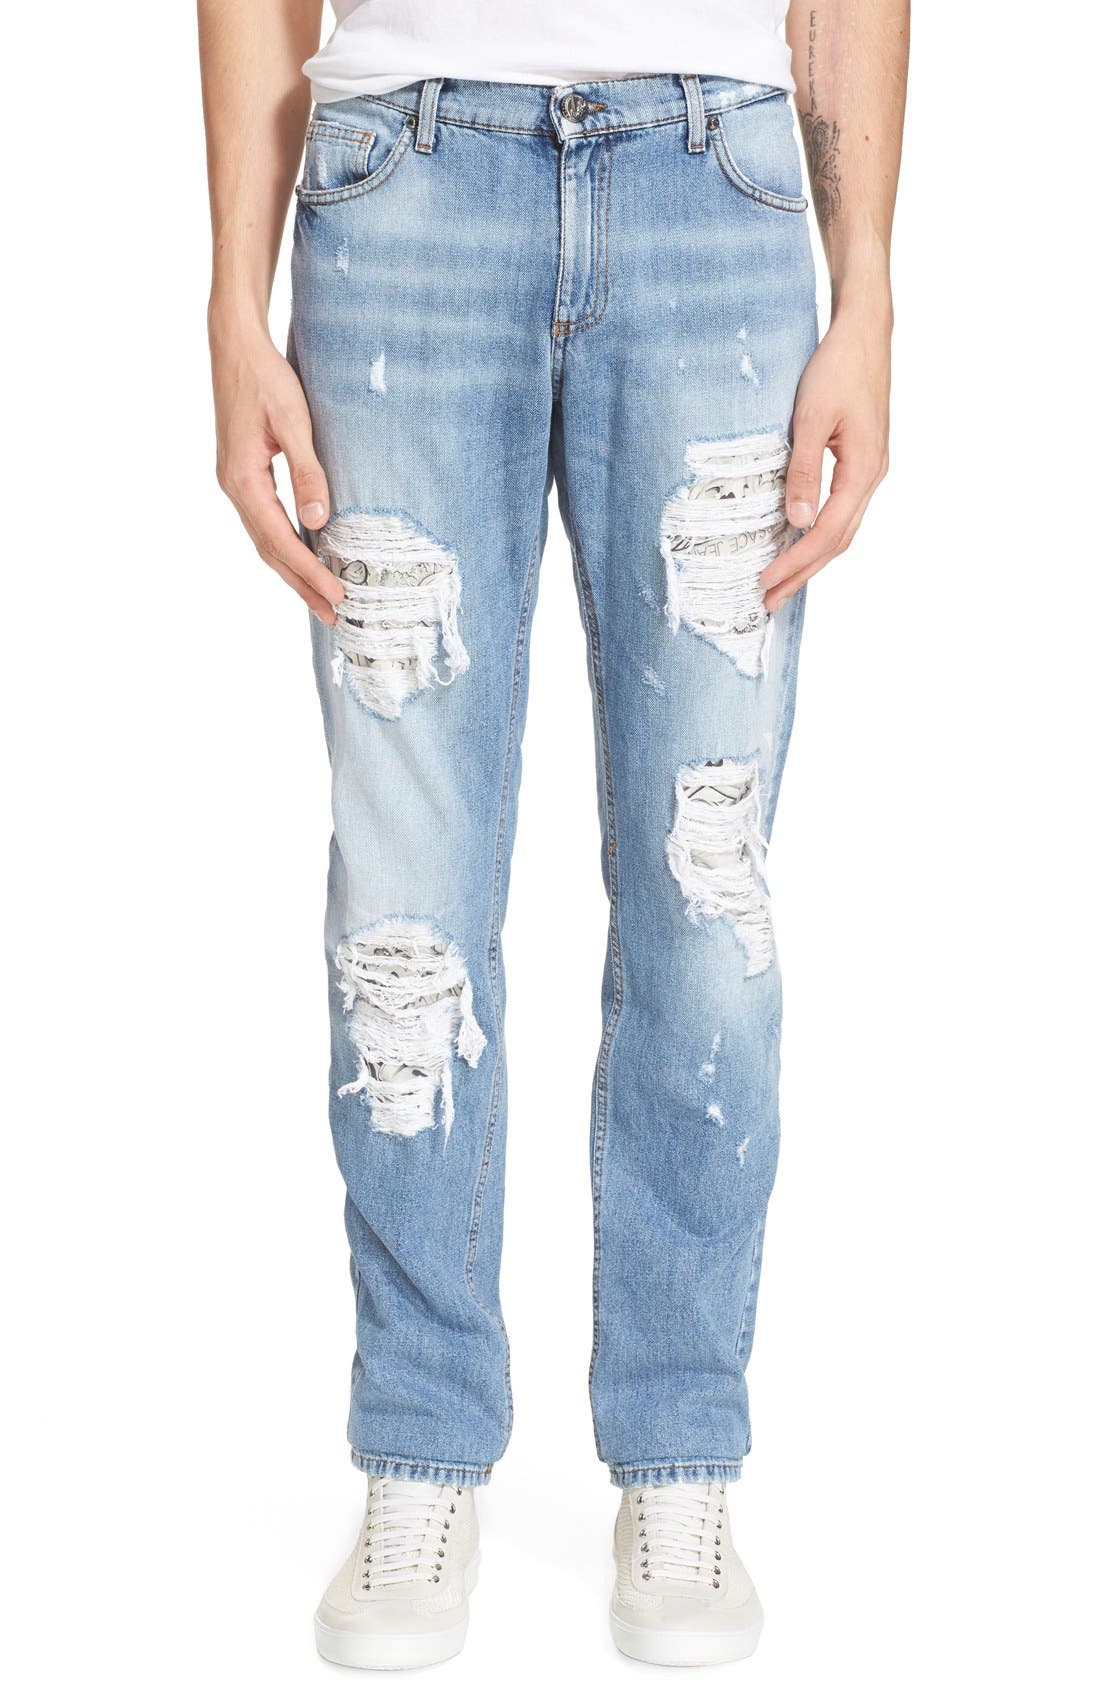 paige jean shorts